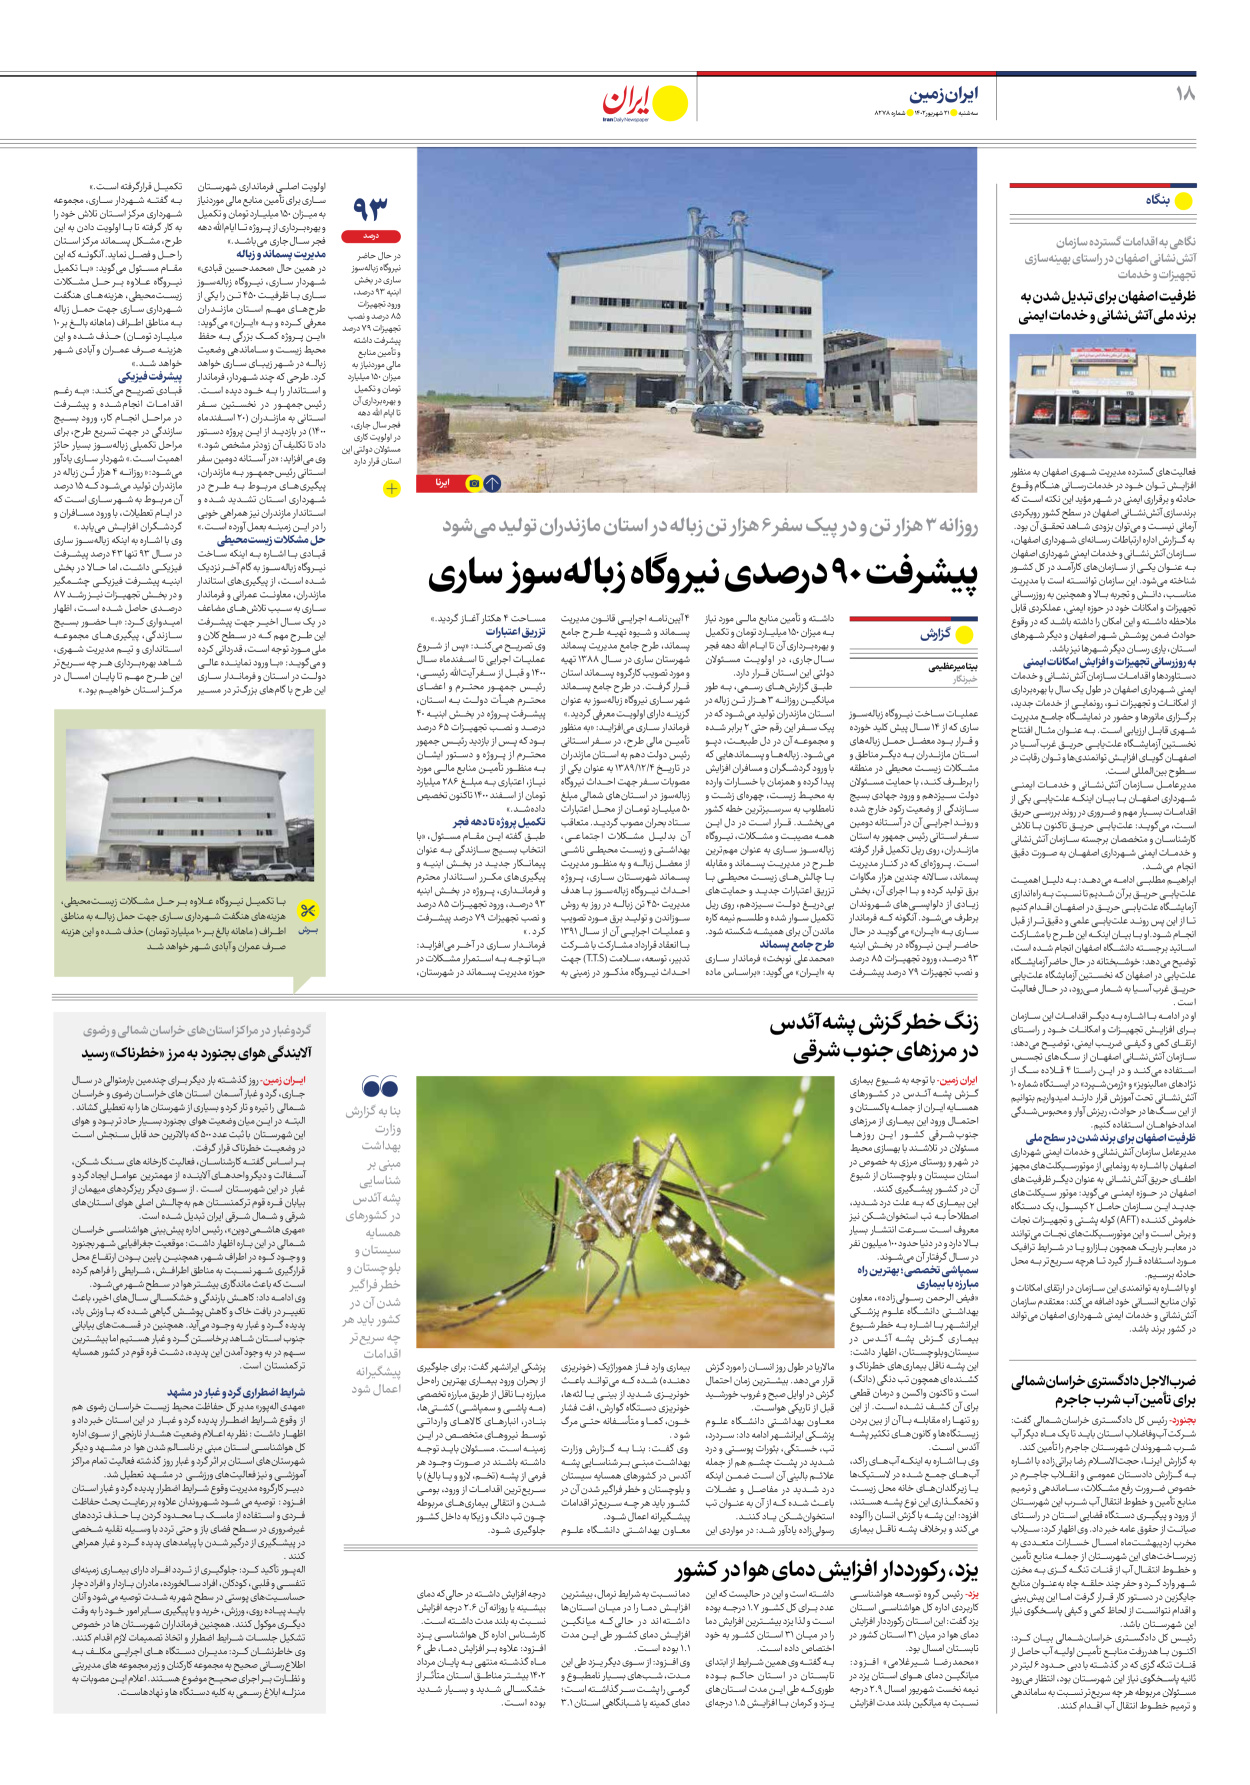 روزنامه ایران - شماره هشت هزار و دویست و هفتاد و هشت - ۲۱ شهریور ۱۴۰۲ - صفحه ۱۸